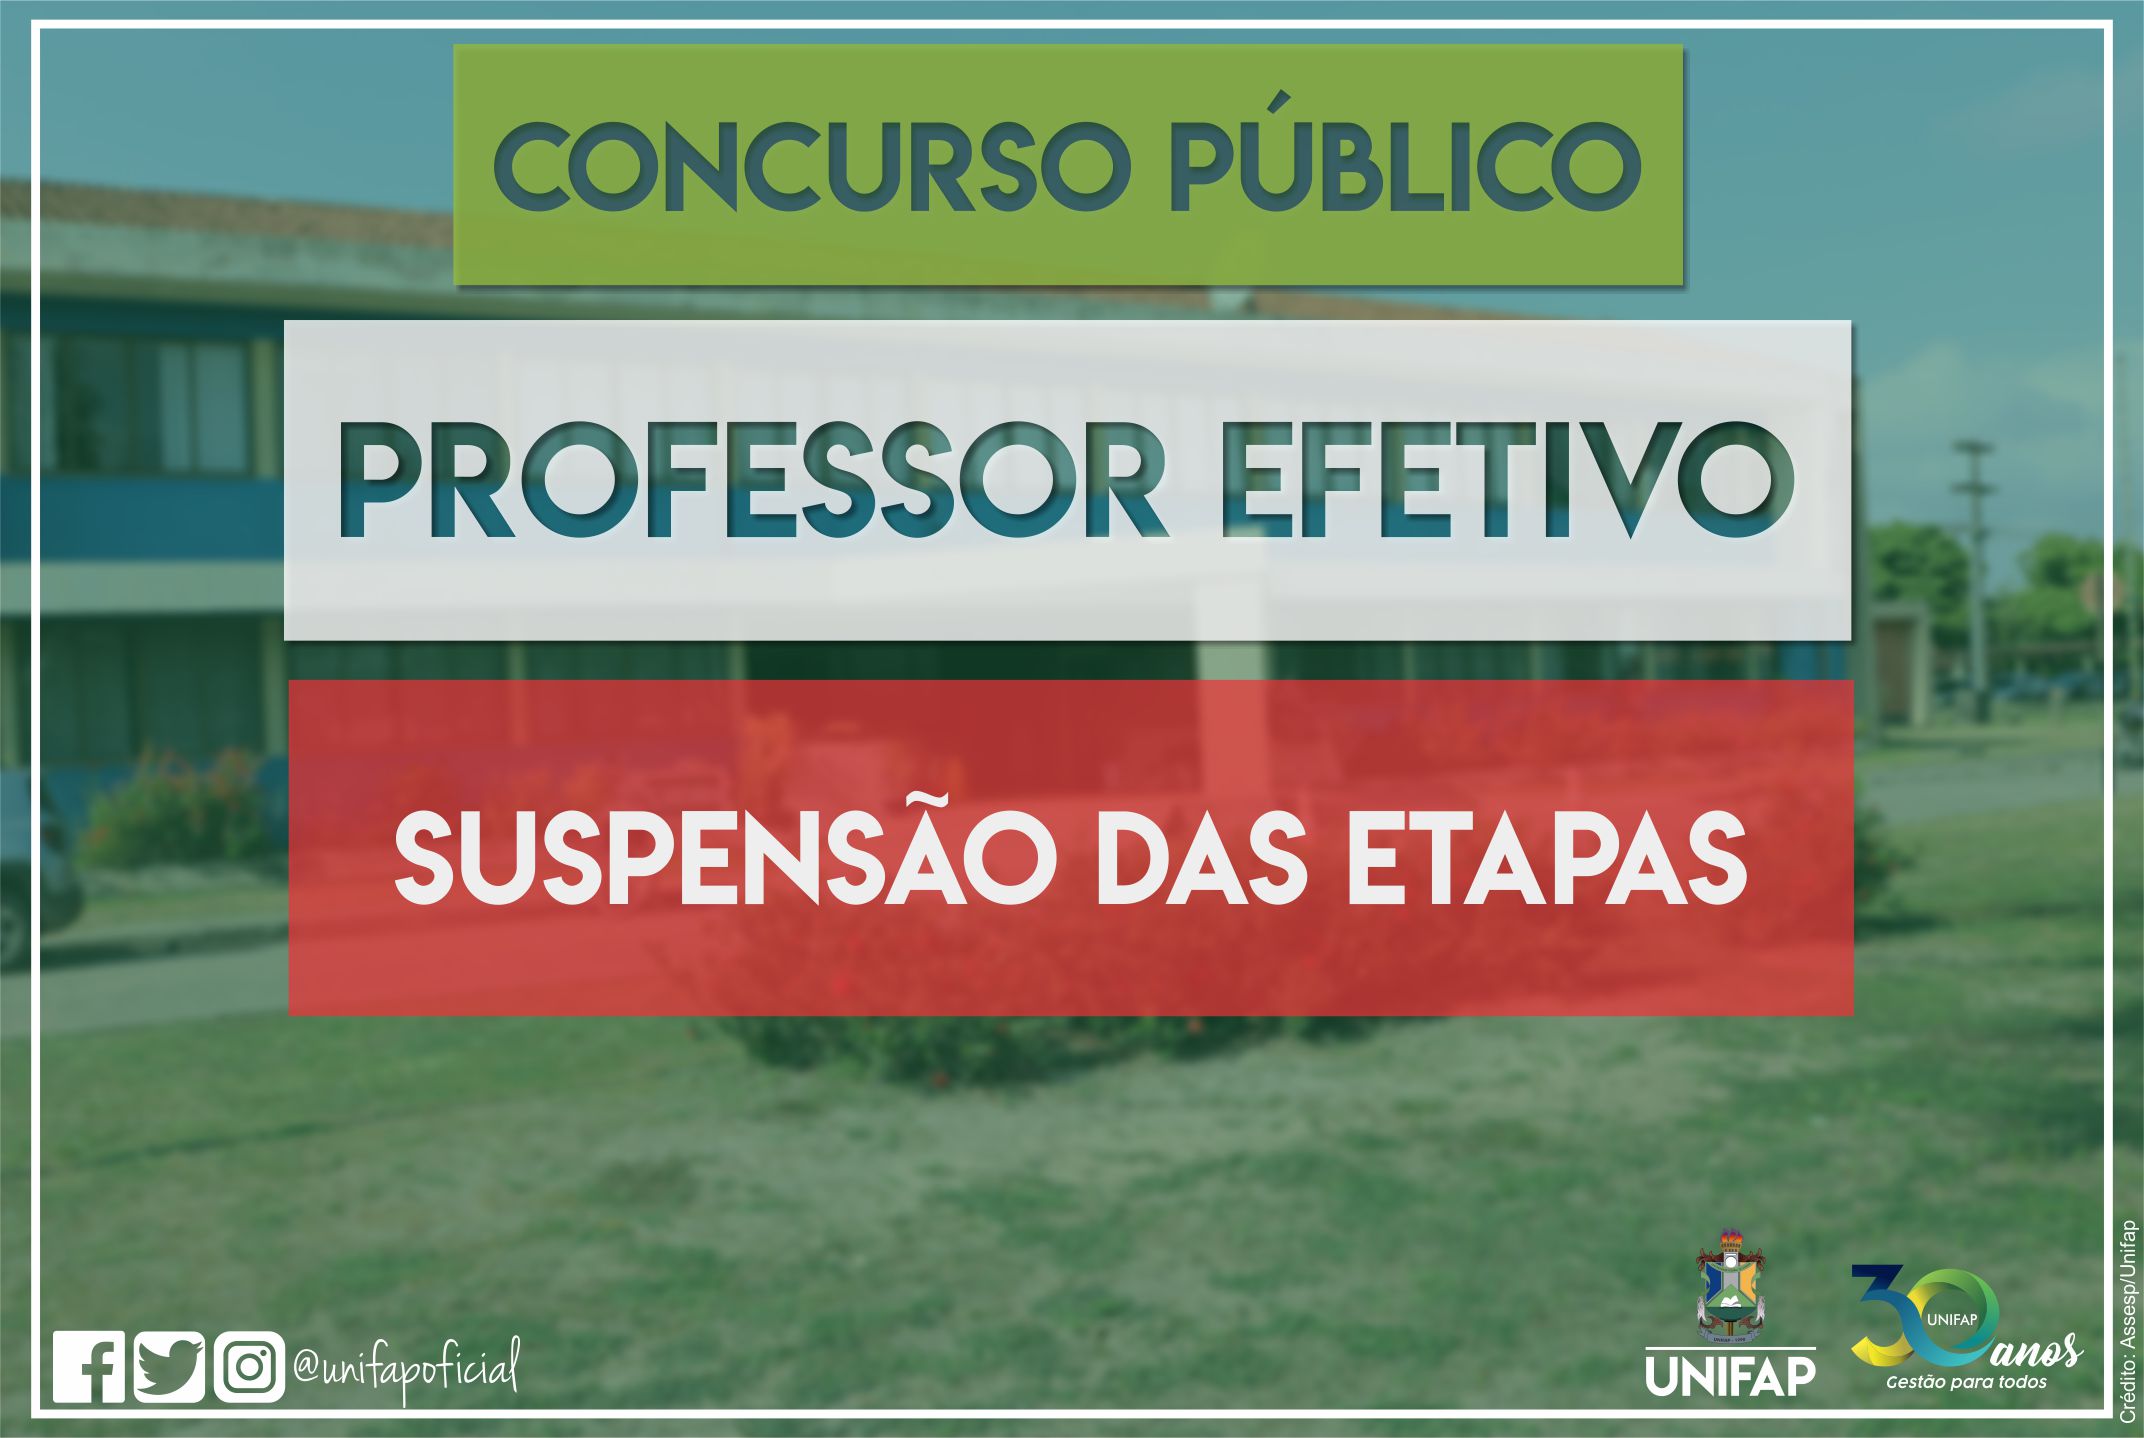 Coronavírus – UNIFAP comunica a suspensão das etapas do Concurso Público para Professor Efetivo